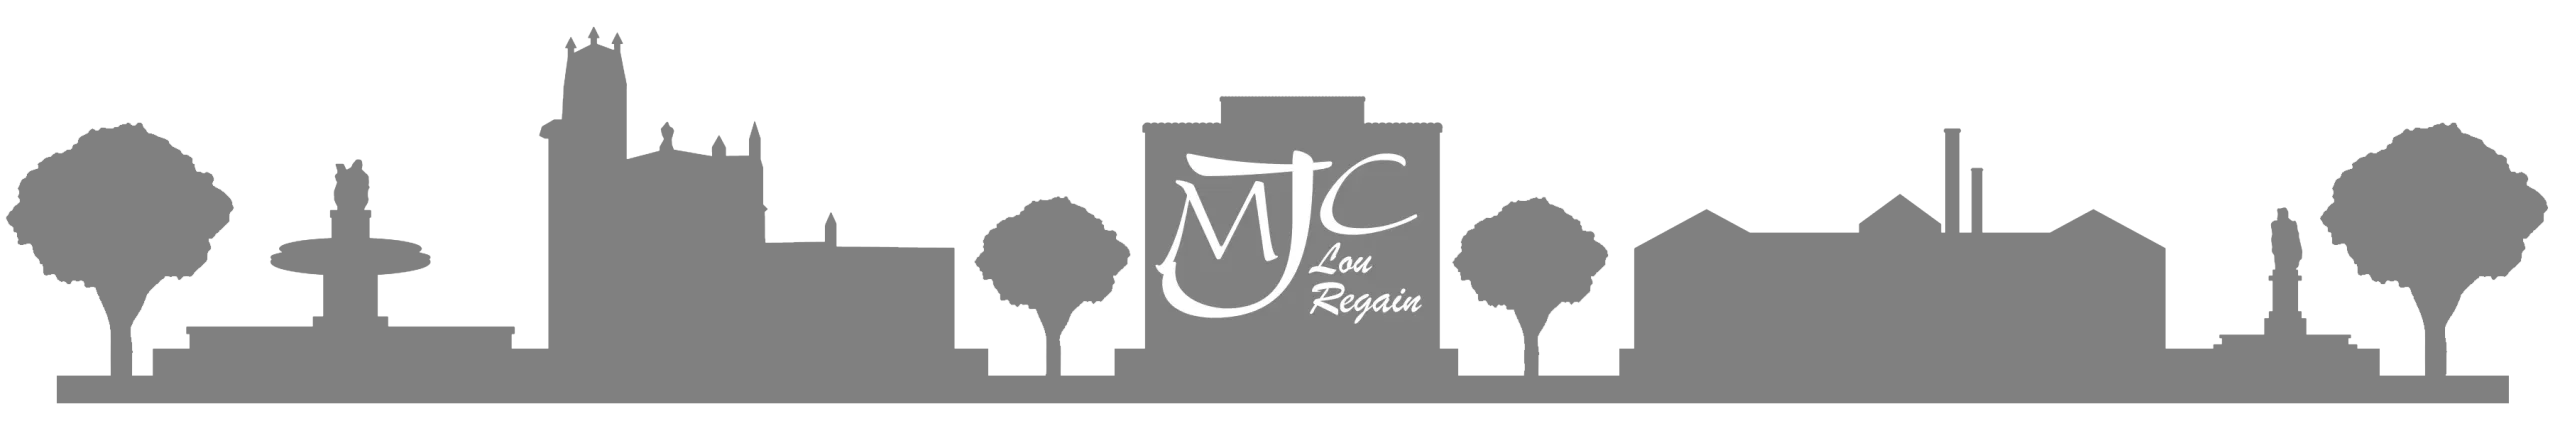 Bienvenue sur le site de l'association MJC Lou Regain de COUDOUX, vous y retrouverez notre histoire ainsi que l’ensemble de nos activités et événements...